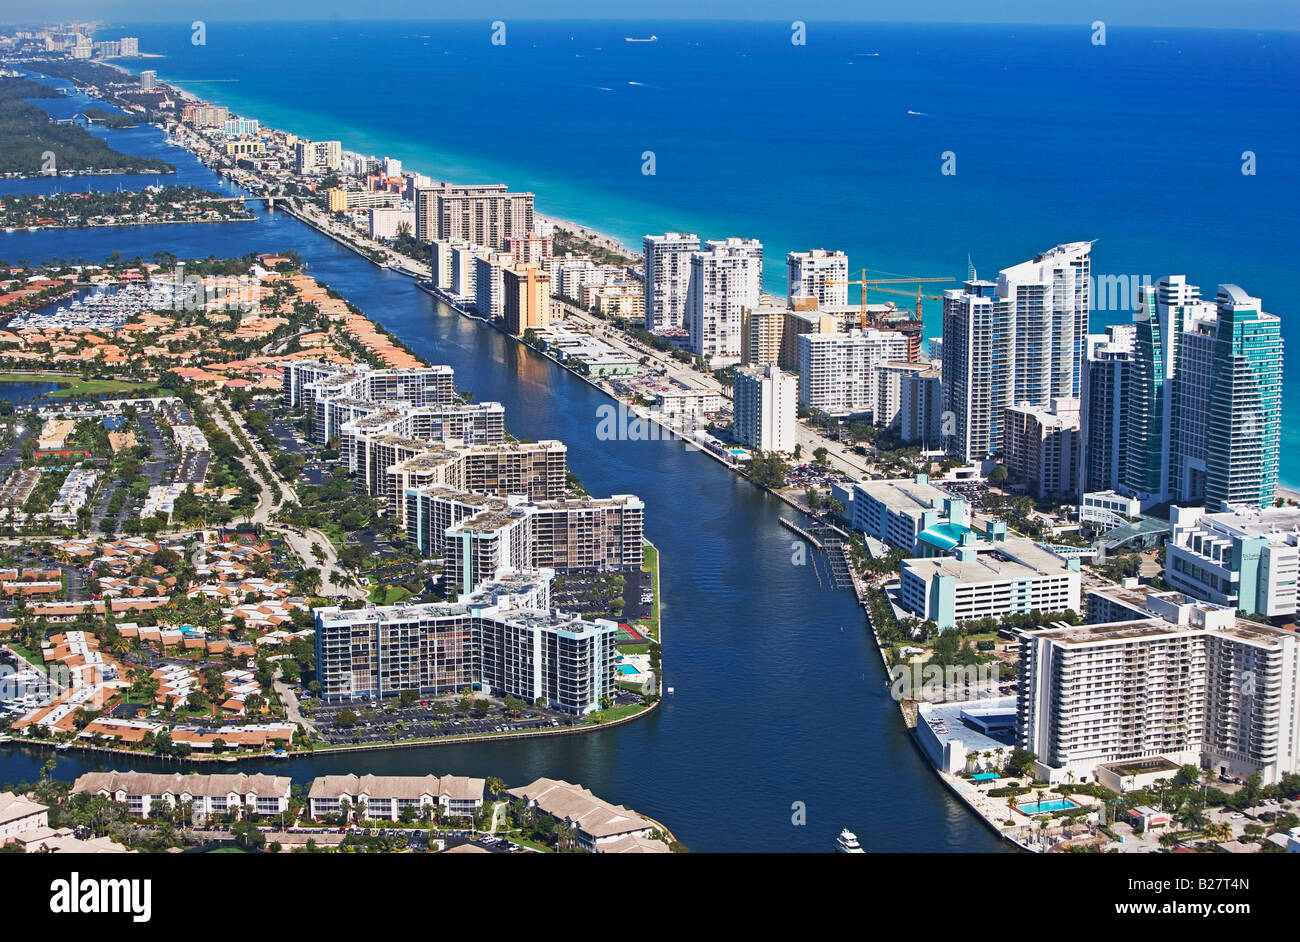 Vista aérea de Fort Lauderdale, Florida, Estados Unidos Foto de stock